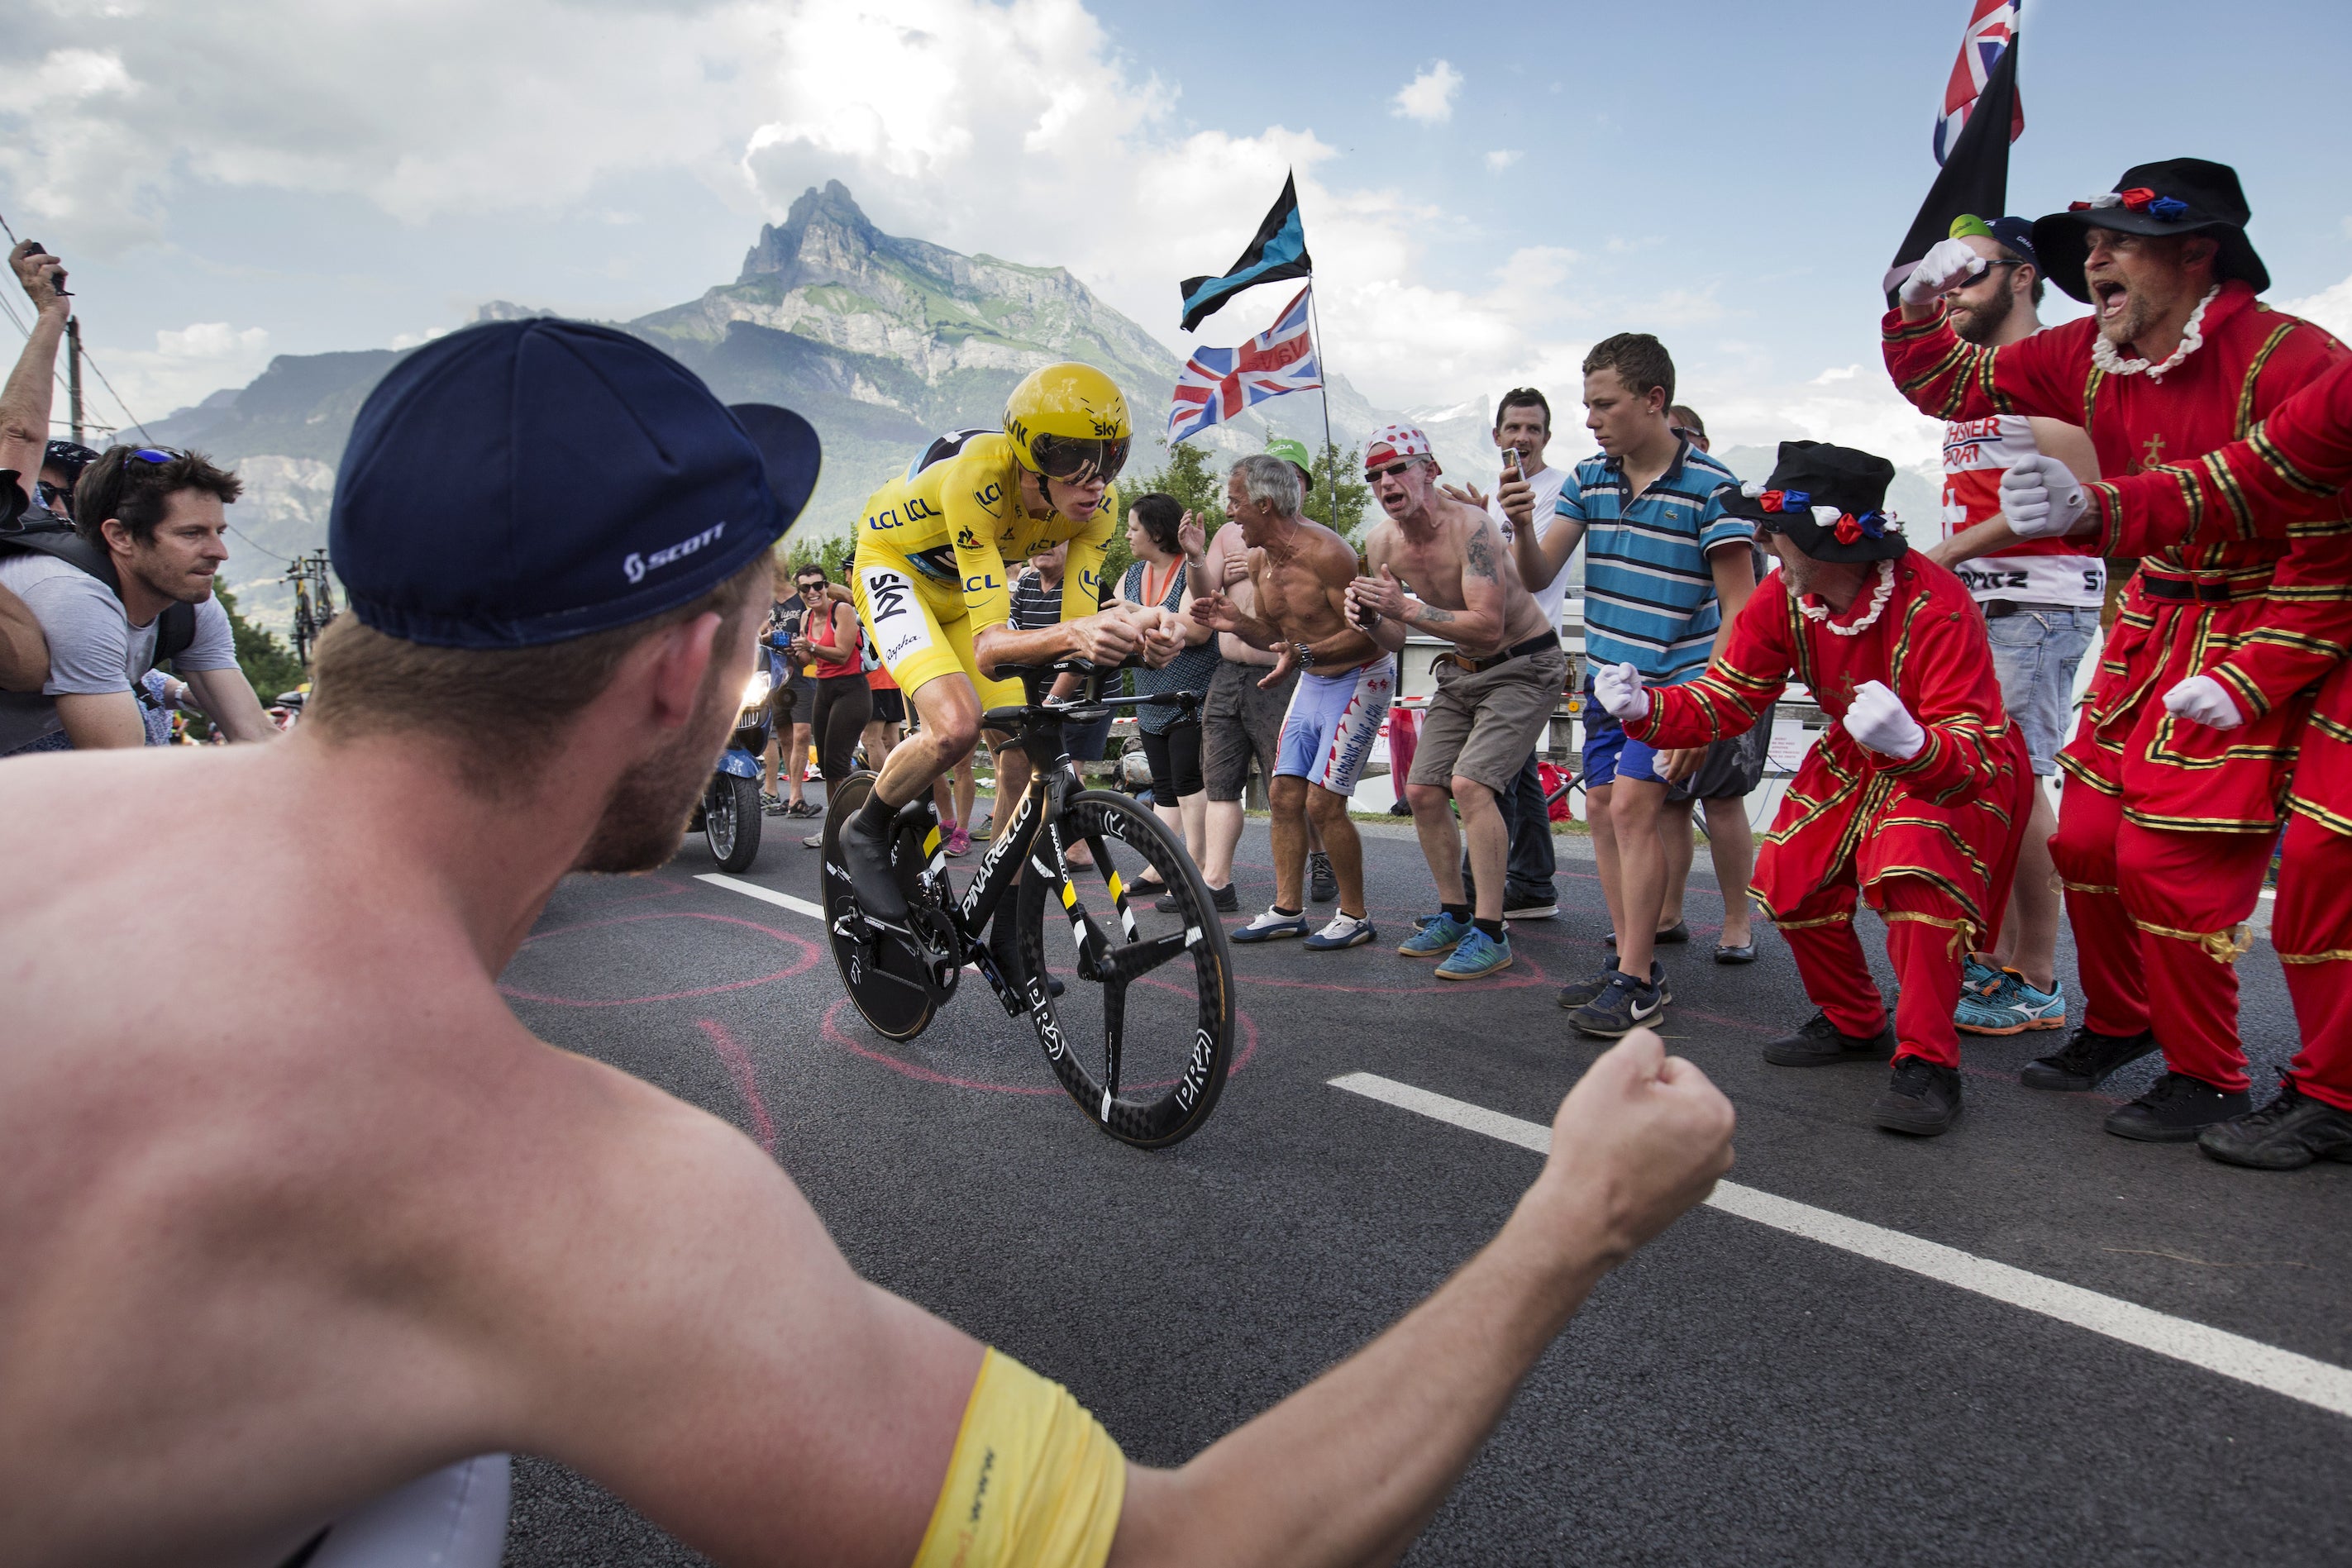 Mit dem Tour de France-Fotografen über die Aufnahme der besten Radfahrer der Welt